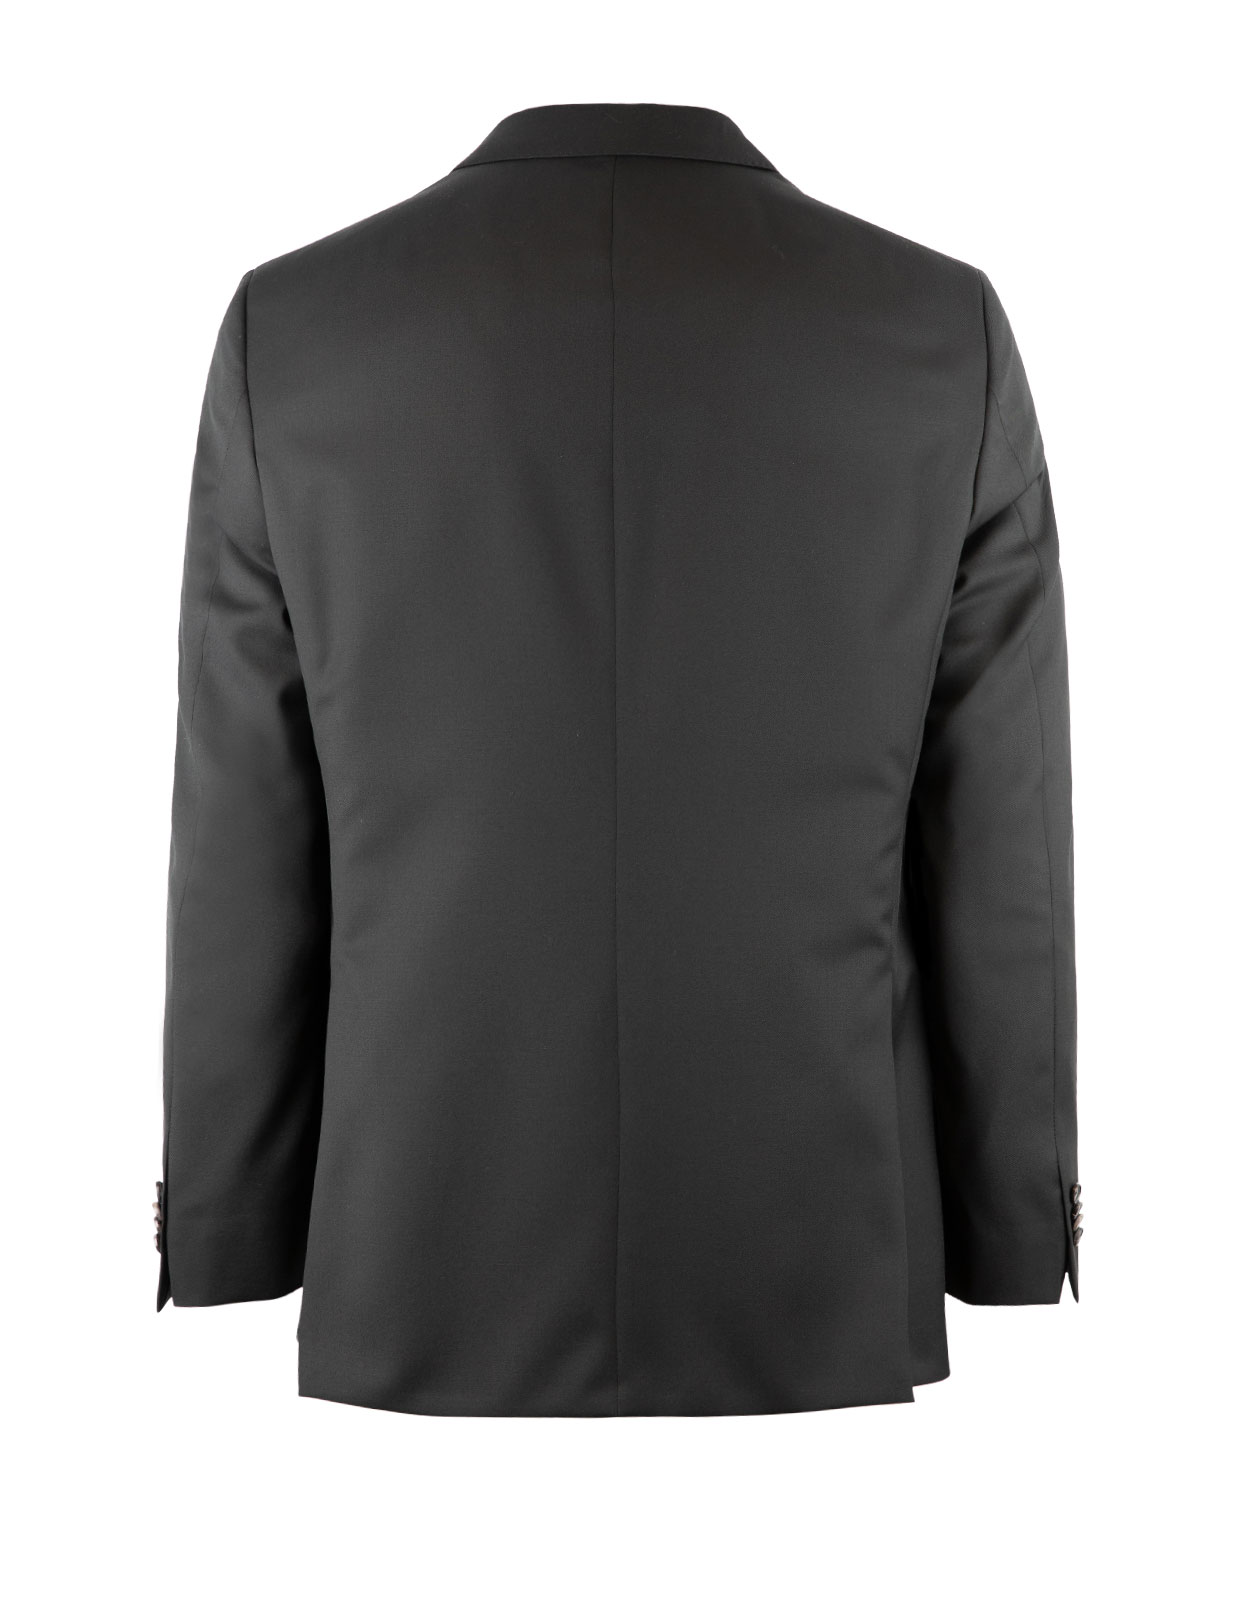 Edson Suit Jacket 110's Wool Mix & Match Black Stl 116